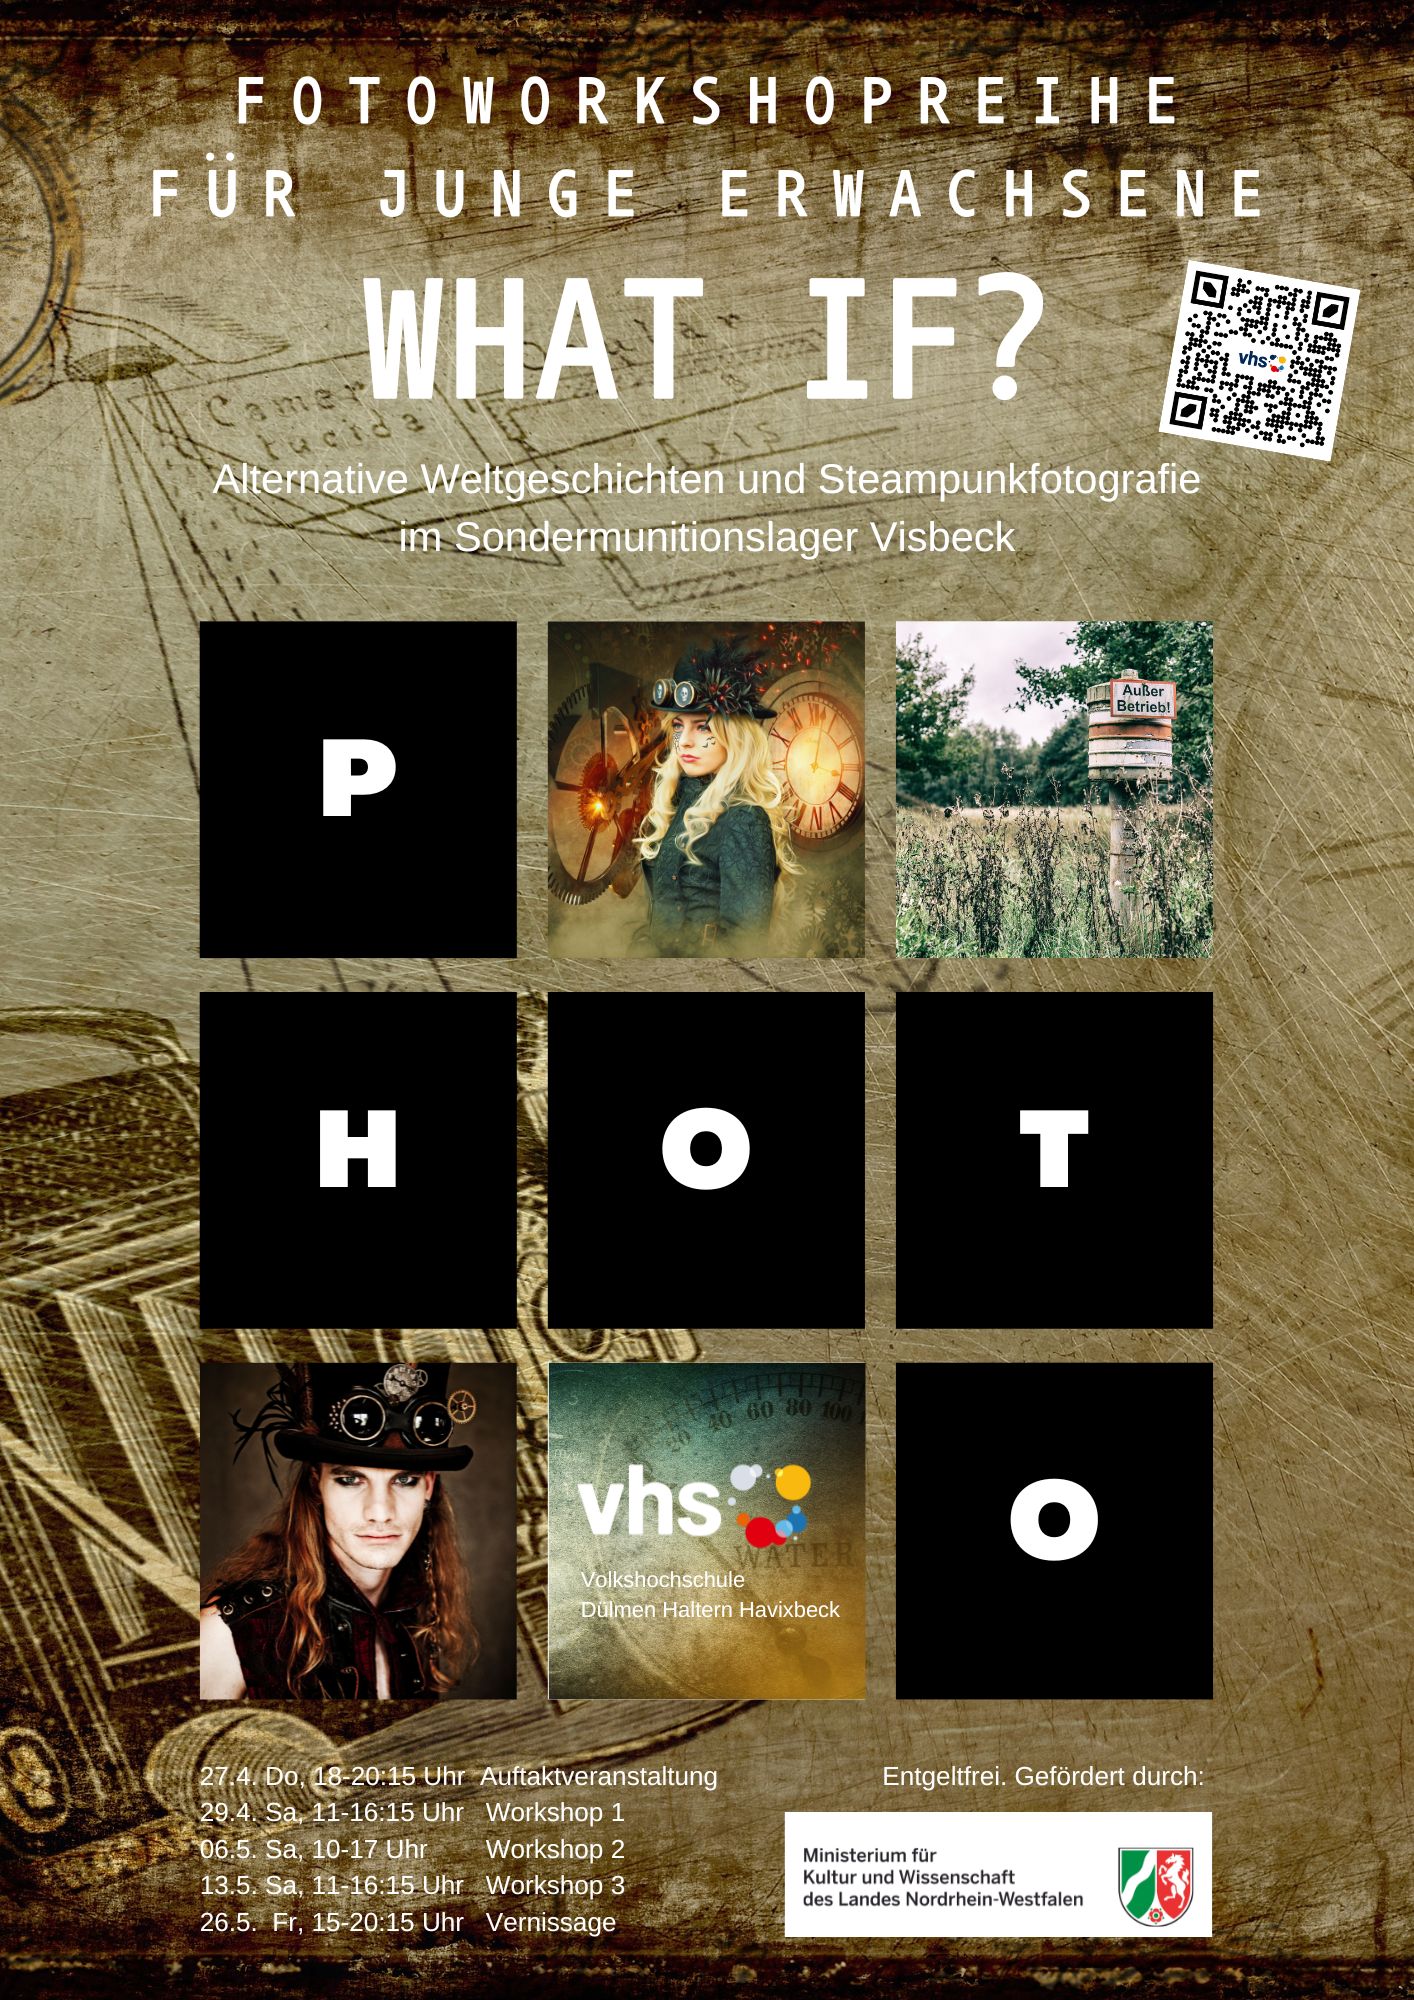 What if...? Eine Fotoworkshop-Reihe für junge Erwachsene